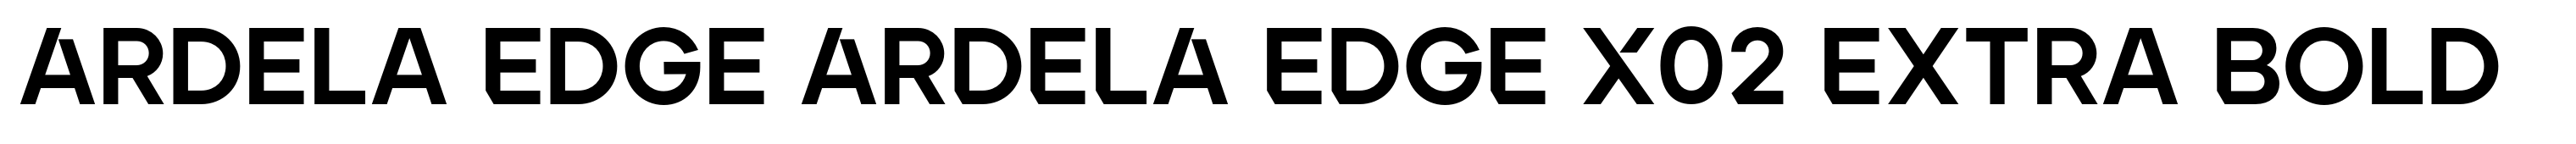 Ardela Edge ARDELA EDGE X02 Extra Bold